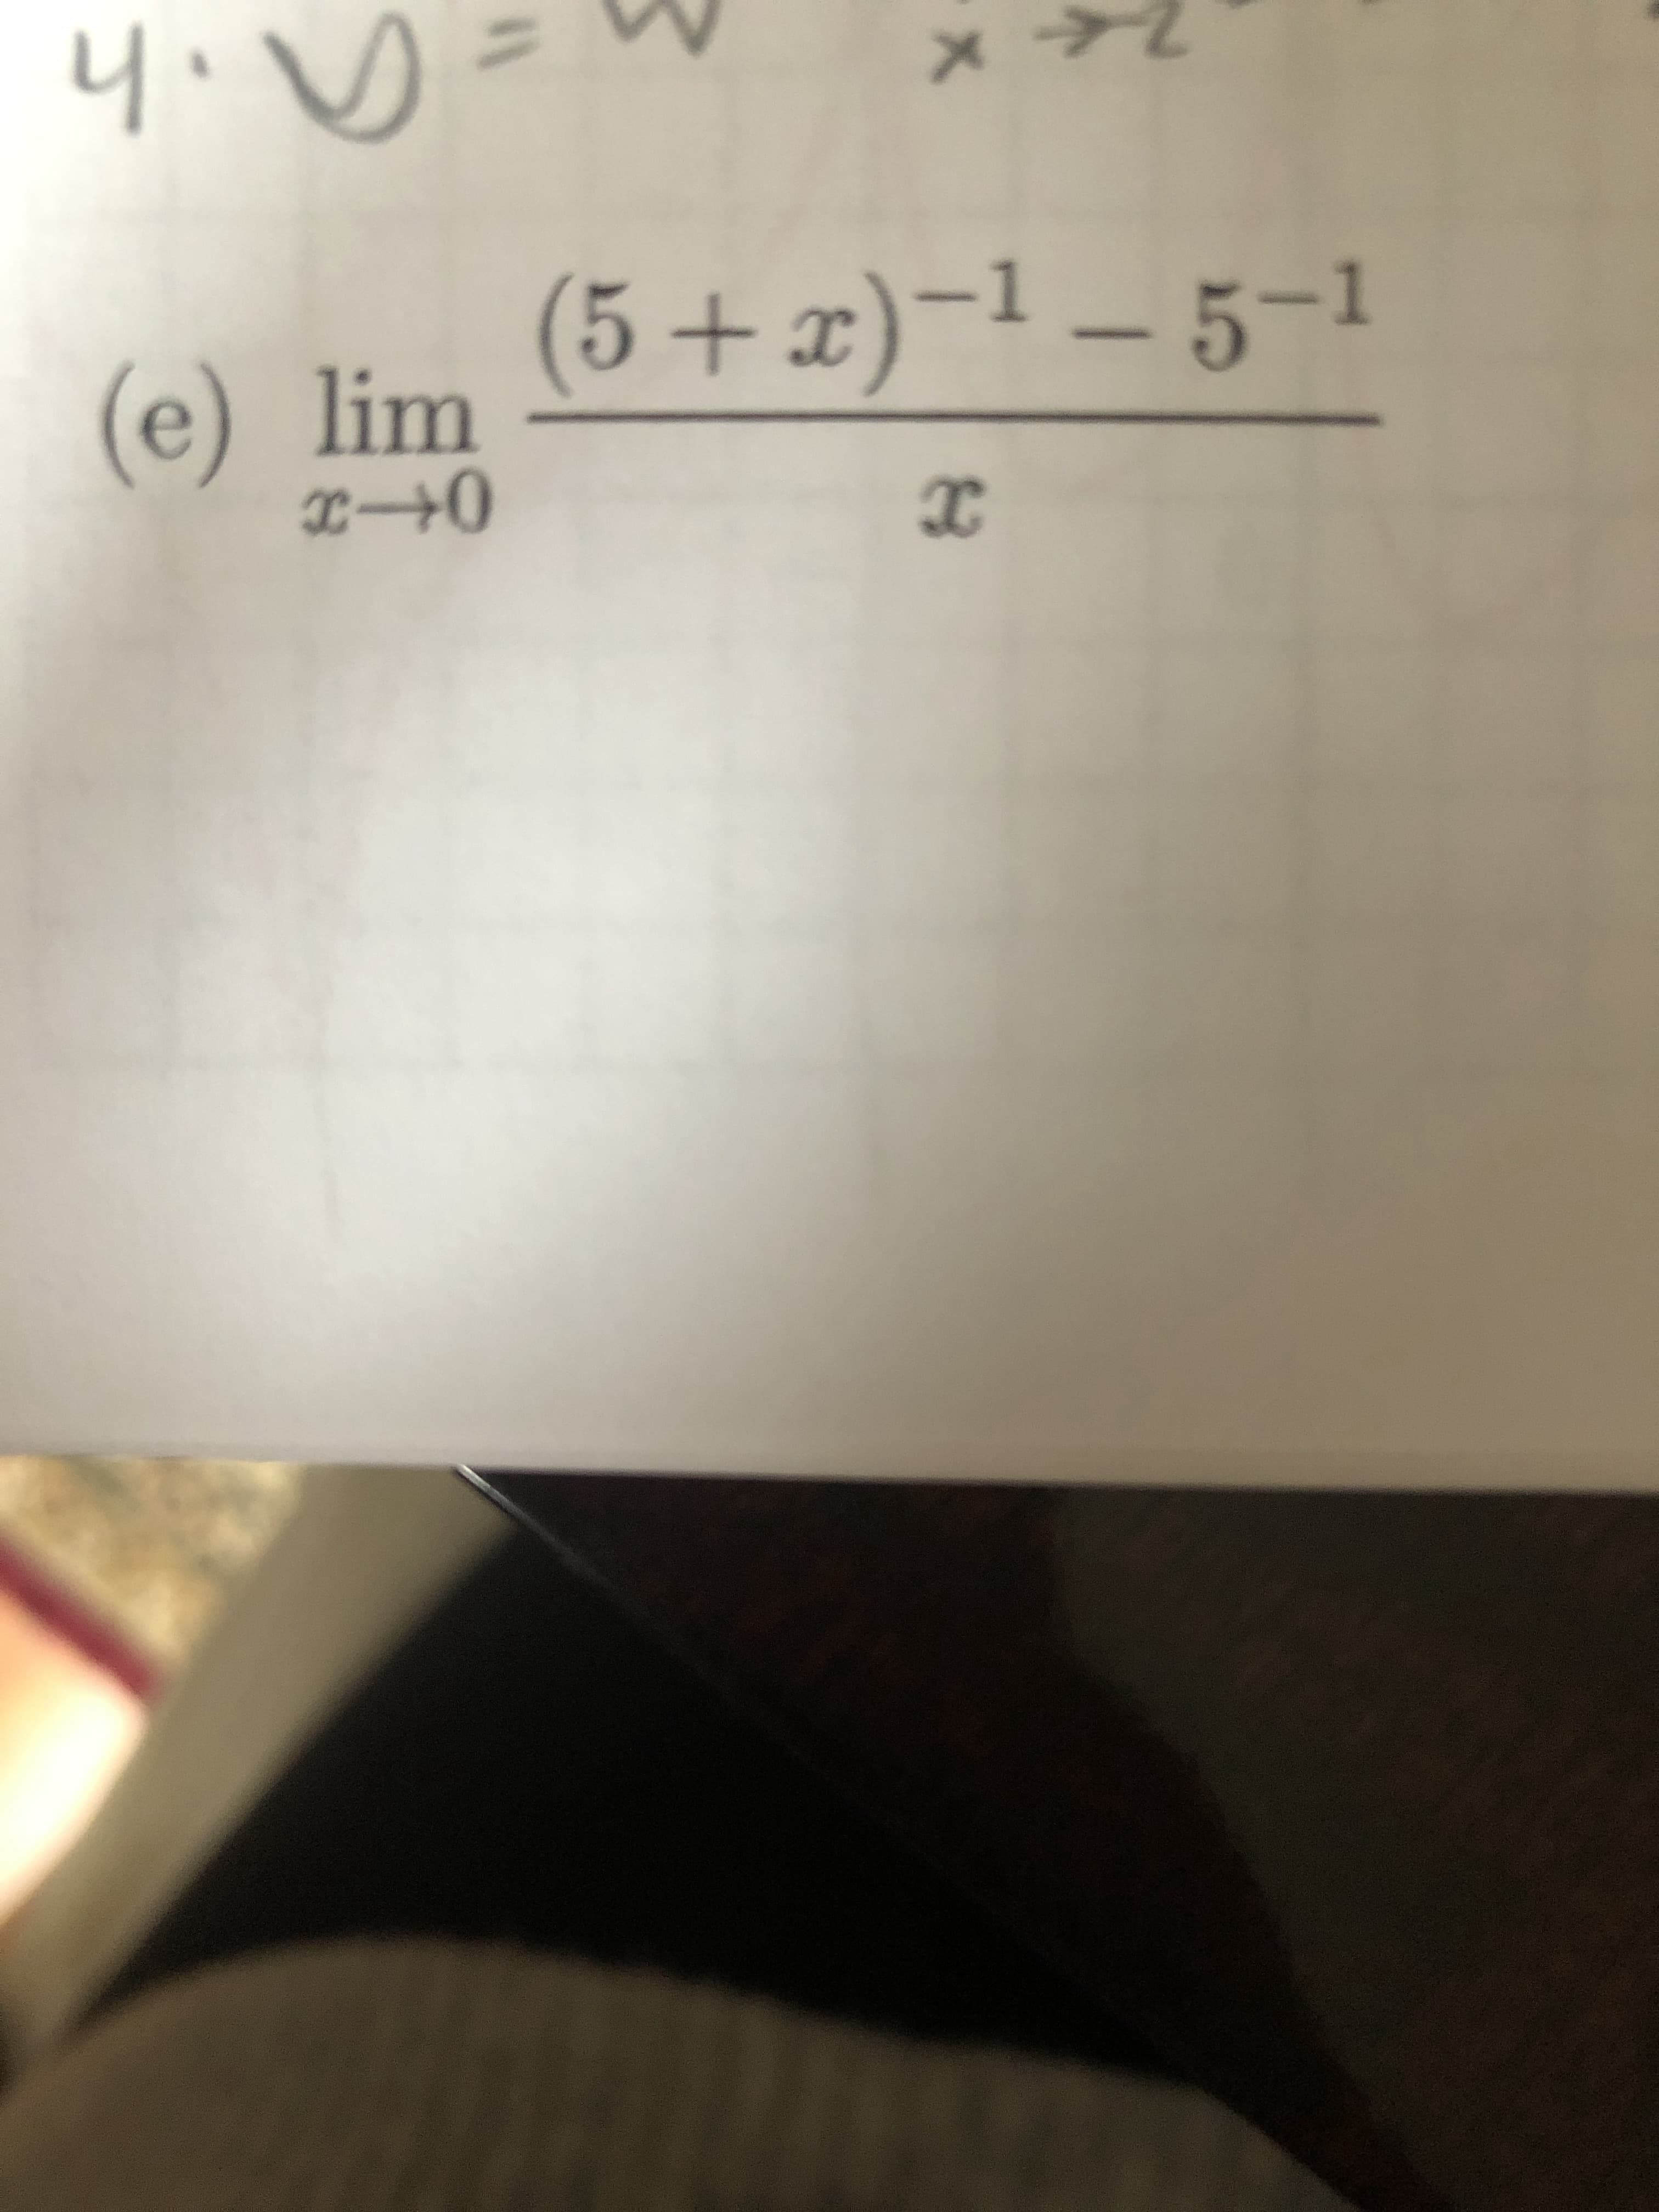 (5+x)-1 – 5-1
lim
